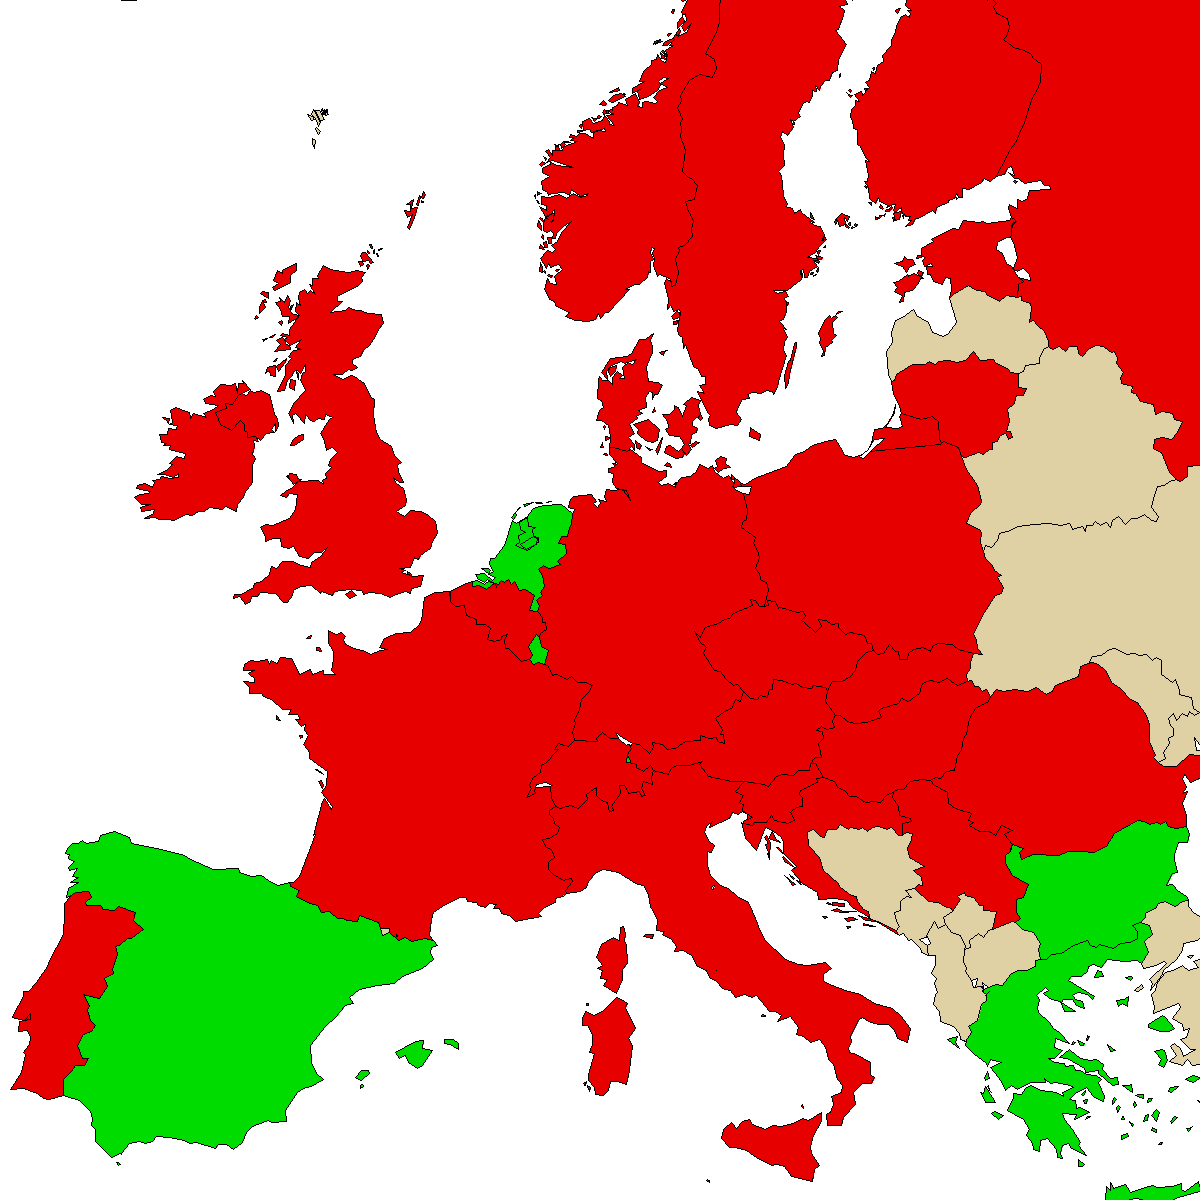 Legal Info Map für unser Produkt 3MMC, Grün sind Länder ohne Verbot, Rot mit Verbot, Grau ist unbekannt